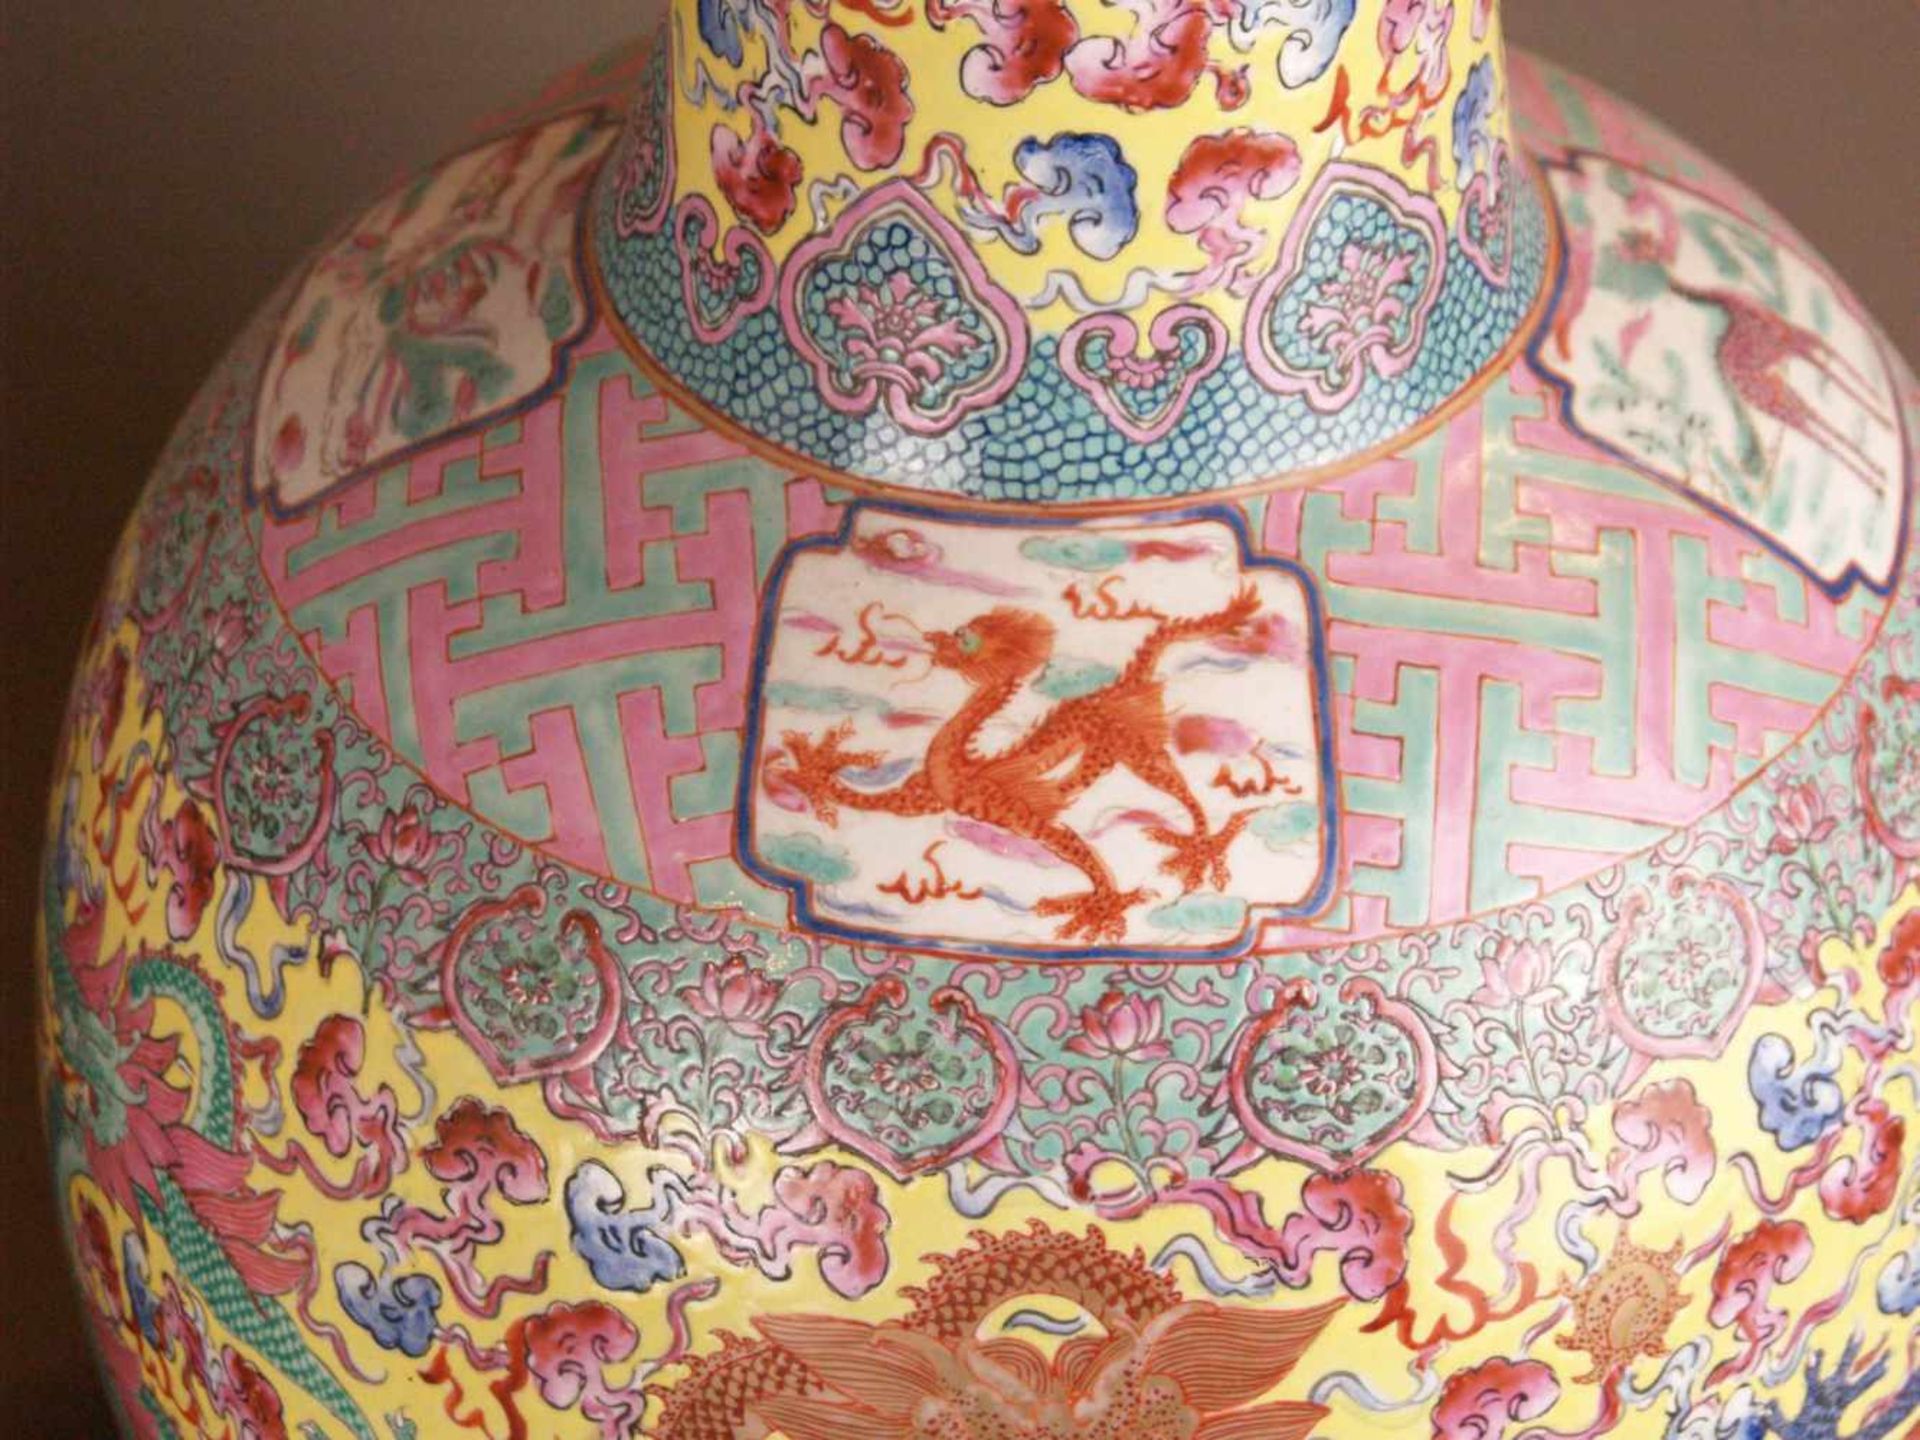 Paar Bodenvasen - China 20.Jh.,Tian qiu ping-Typus, üppiger Dekor in polychromen Emailfarben, auf - Bild 4 aus 15